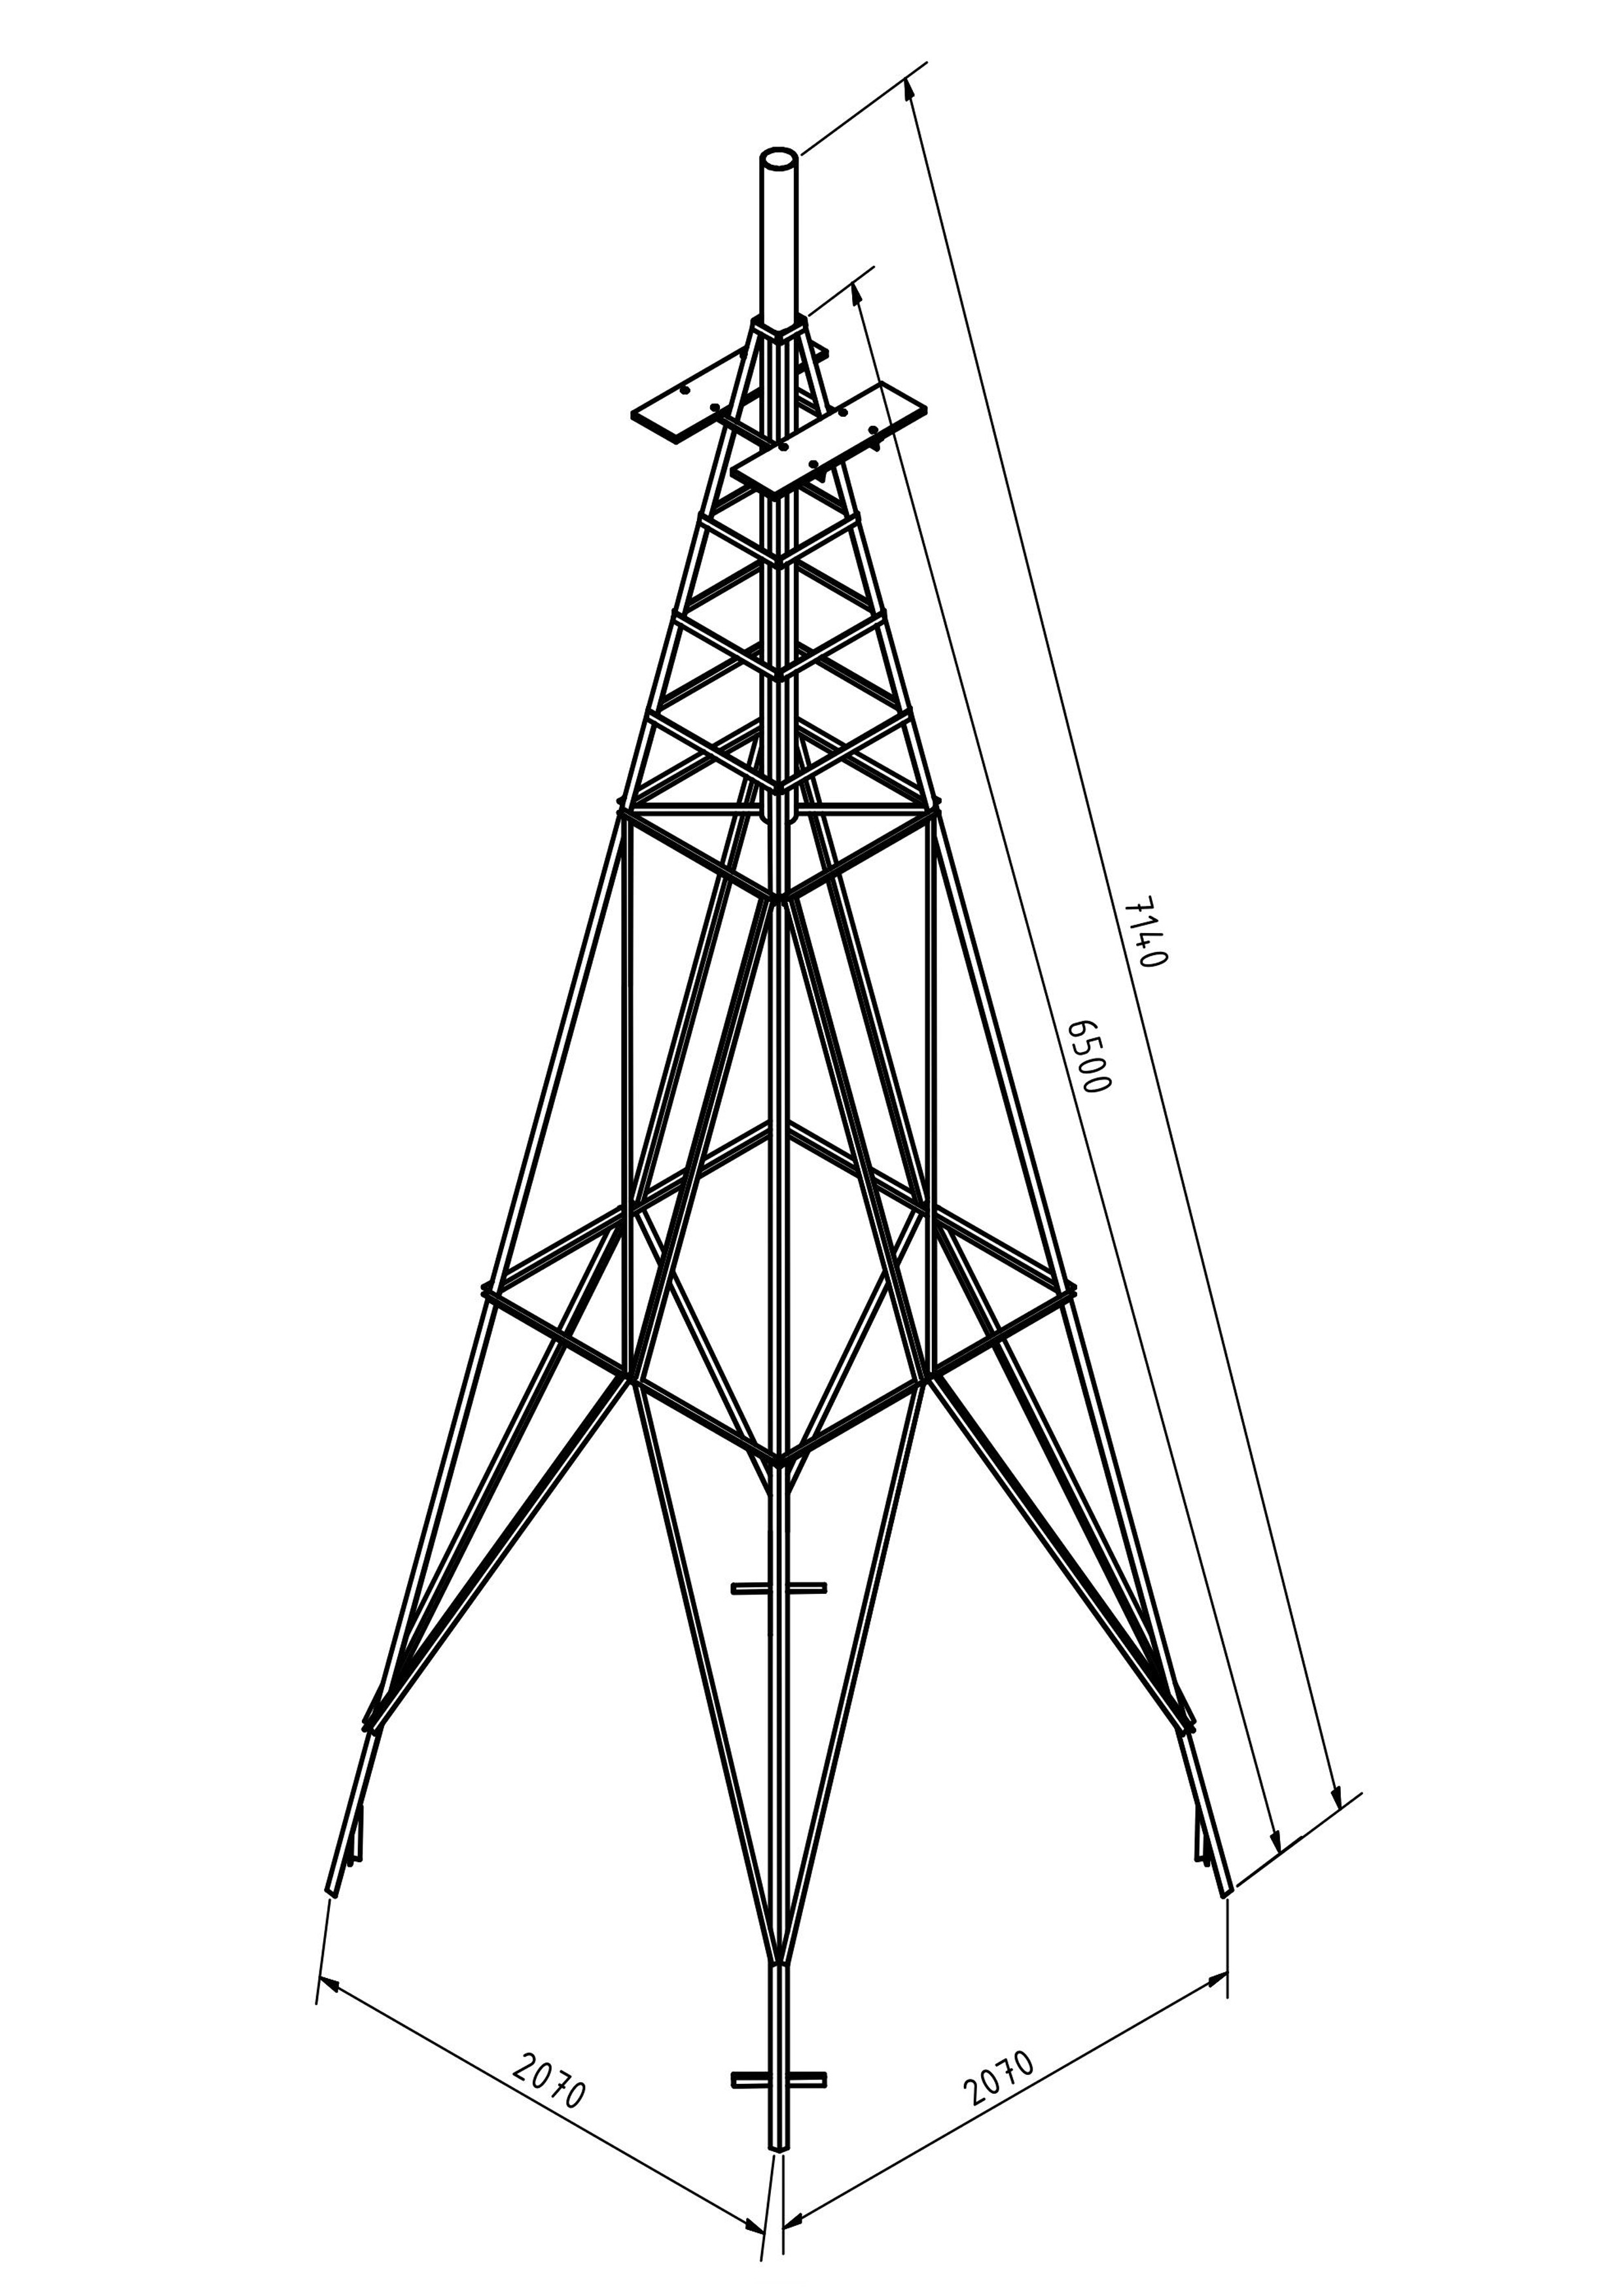 Wot mwt lattice-tower-mast-for-wind-turbine 0000.jpg